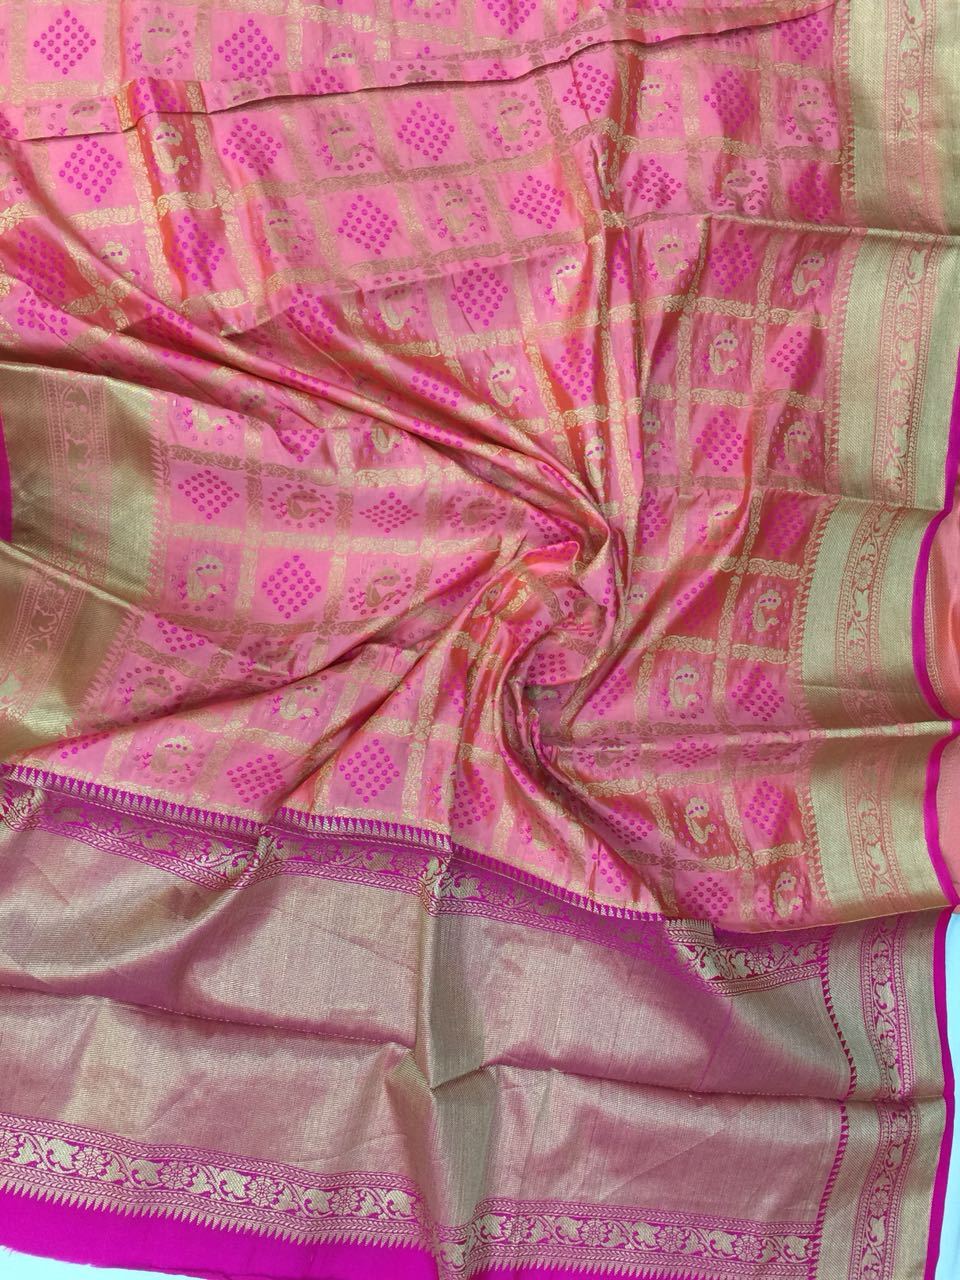 Rose Tinge Patola Banarasi Silk Saree BNS012 pink coloured saree simple